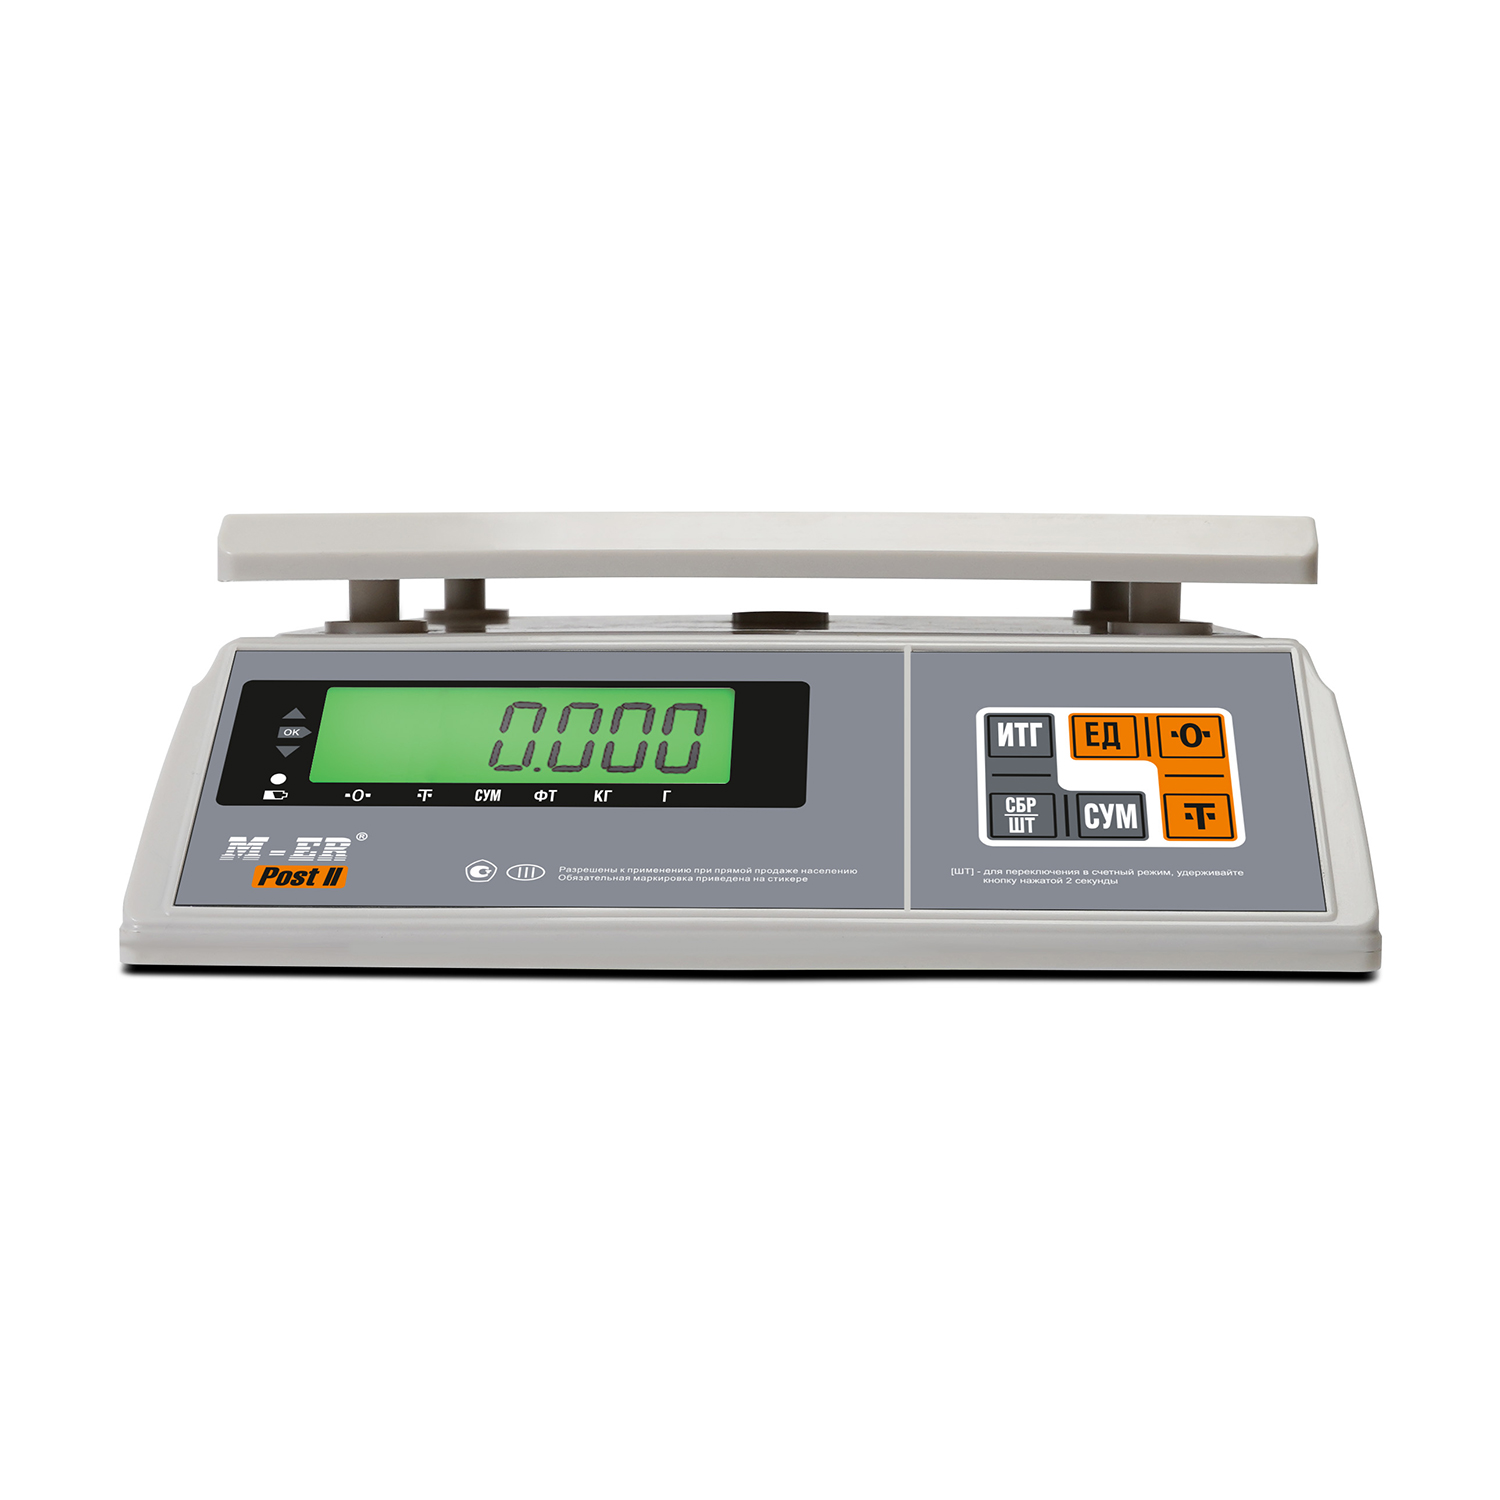 Порционные весы M-ER 326 AFU-3.01 "Post II" LCD RS-232 (3096)